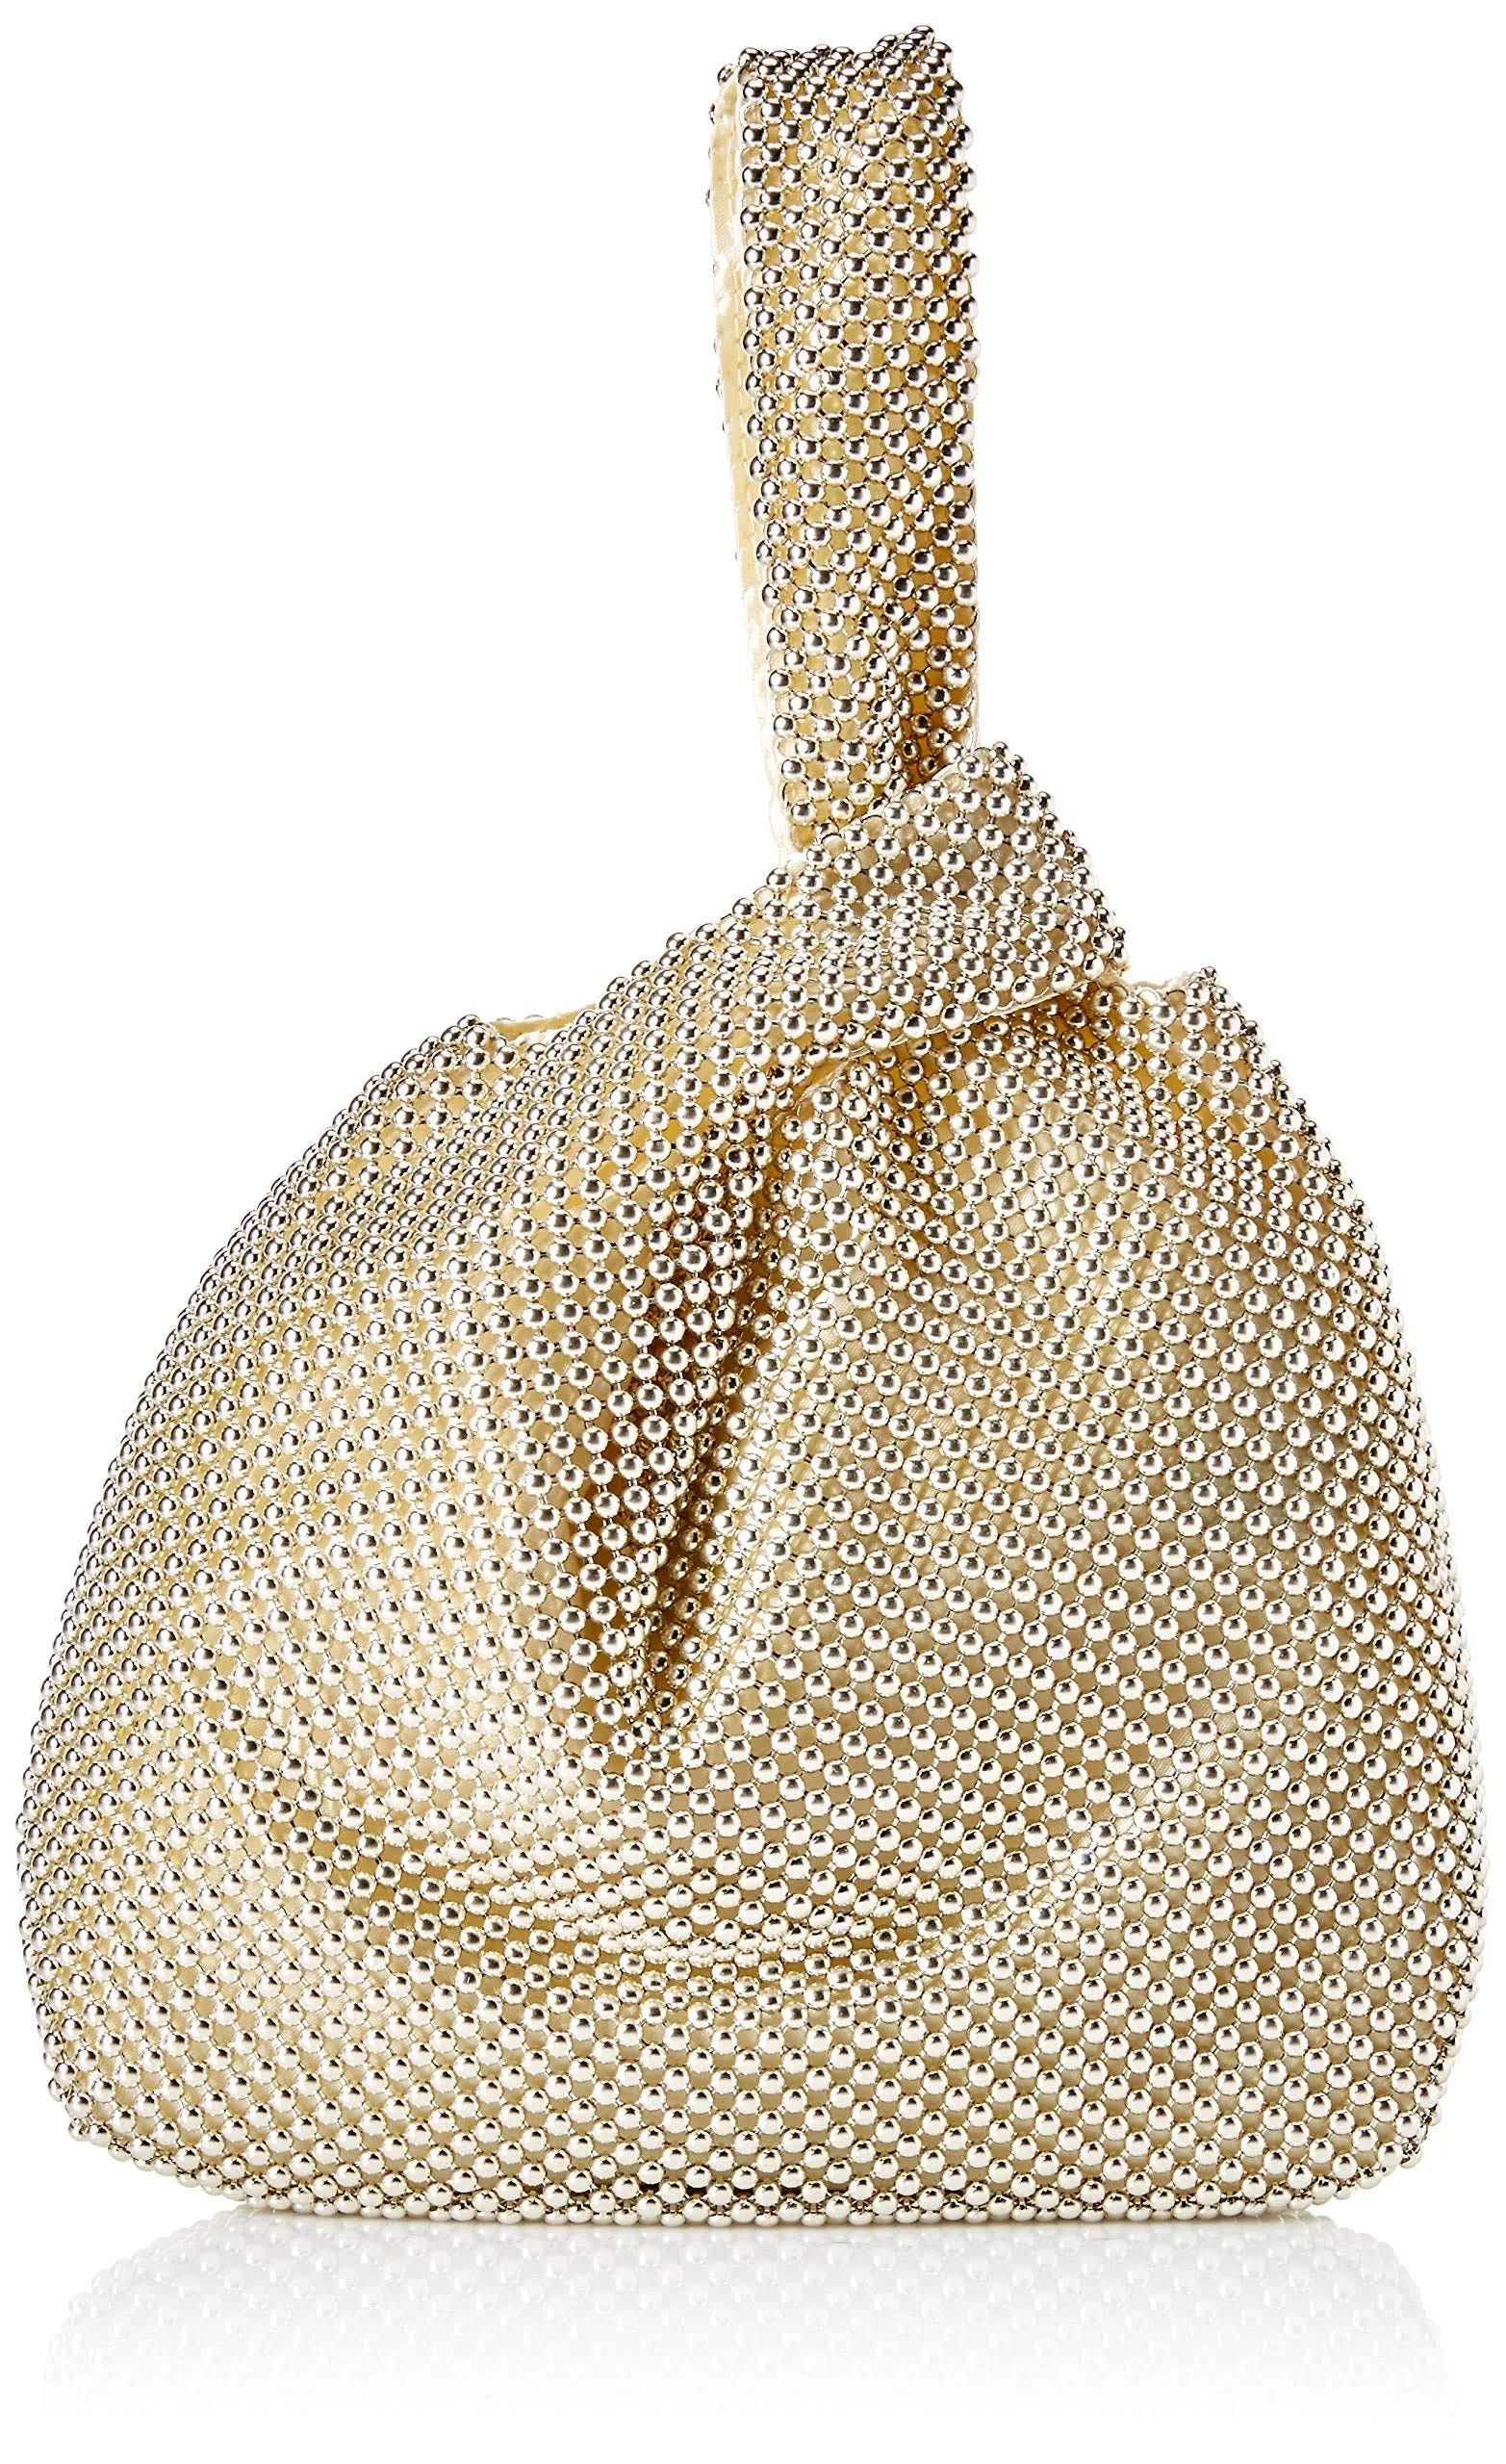 Elegant Light Gold Mesh Pouch Handbag for Formal Events | Image